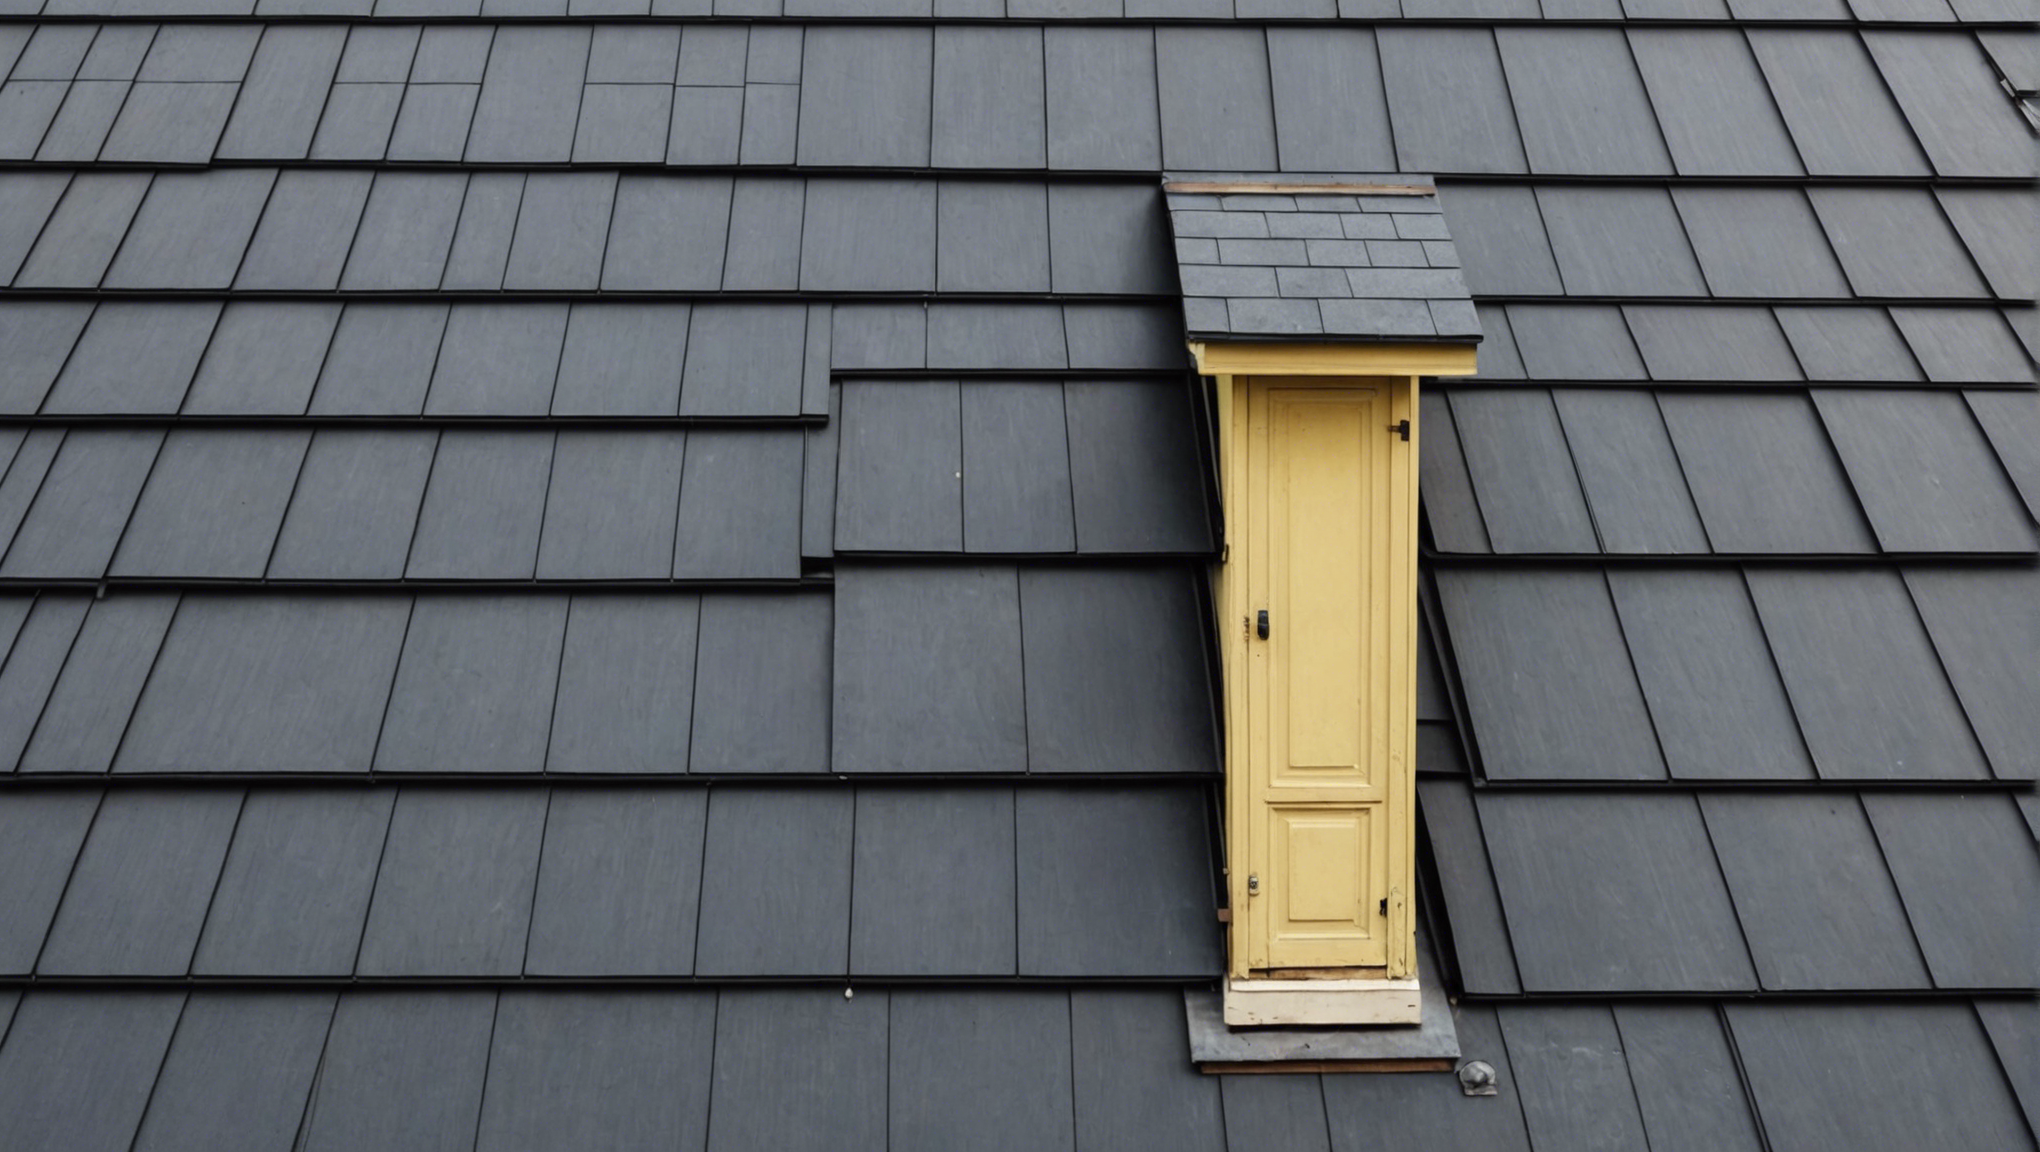 découvrez les avantages esthétiques et durables d'une toiture en ardoise pour votre maison. consultez nos conseils pour l'installation et l'entretien de ce matériau naturel et robuste.